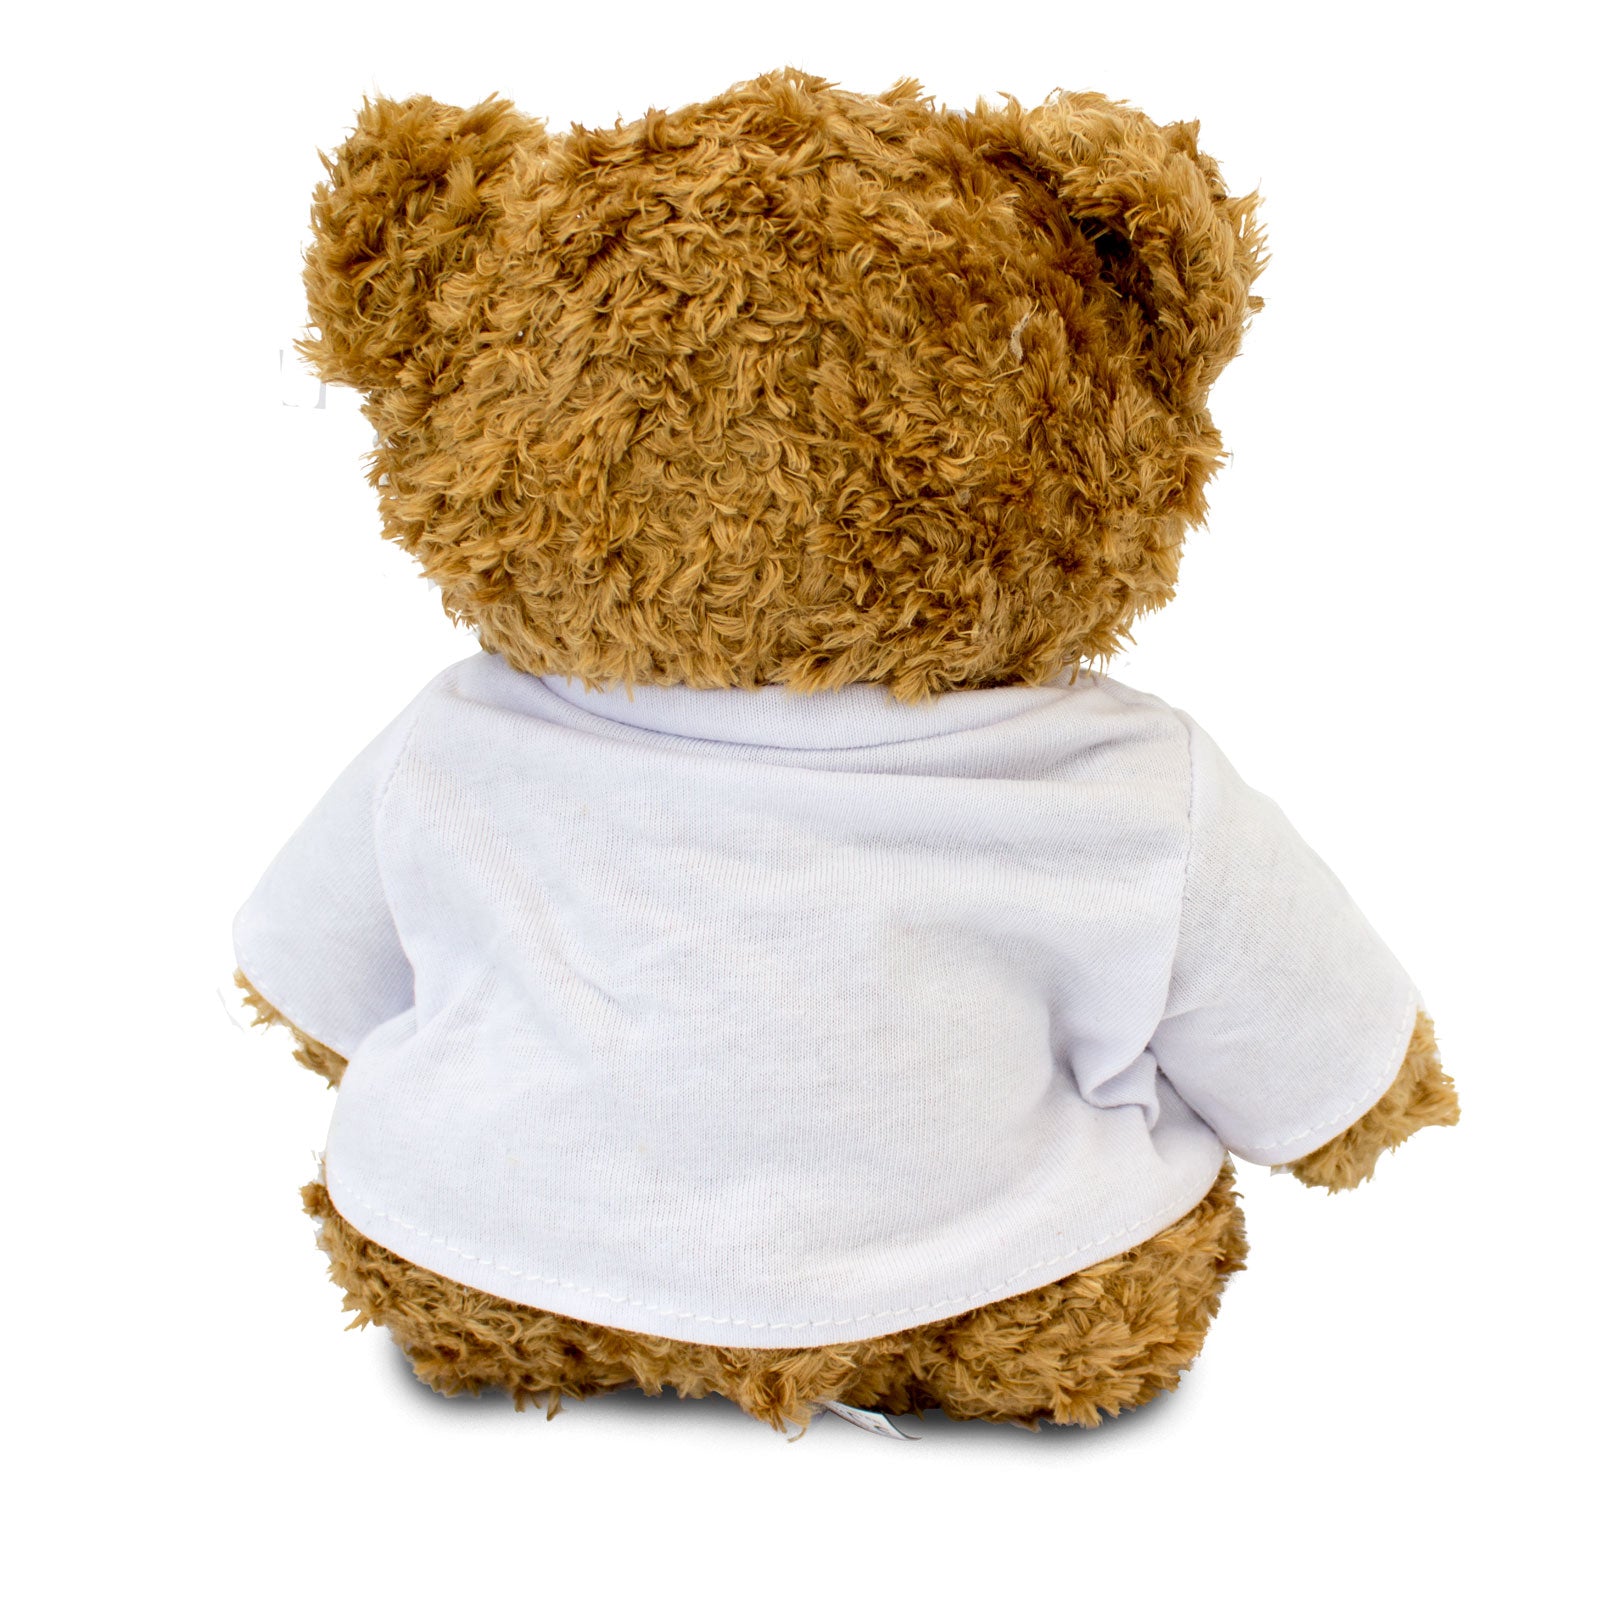 Get Well Soon Graham - Teddy Bear